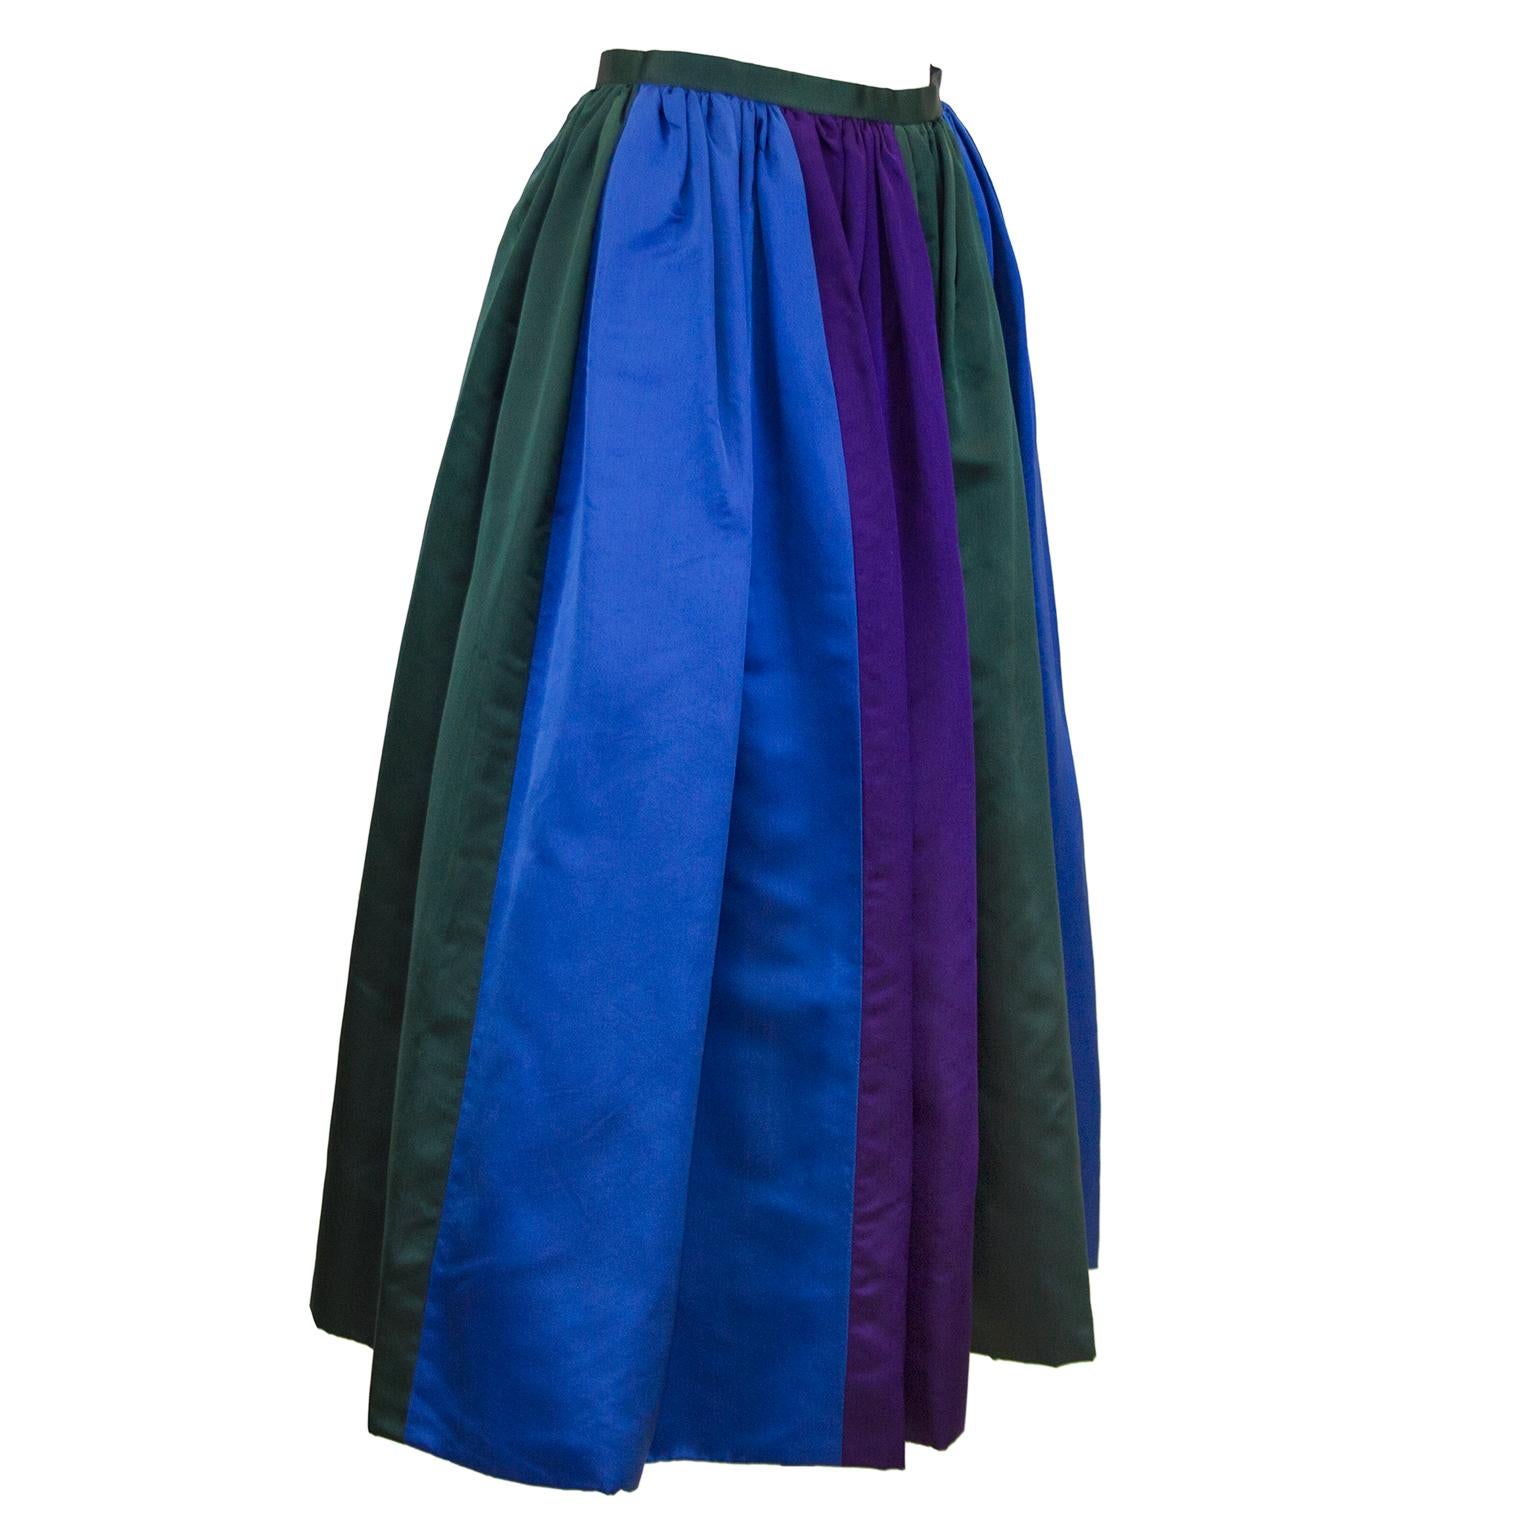 Unbekannter Duchesse-Satin-Abendrock aus den 1960er Jahren in den Farben Königsblau, Jägergrün und Dunkelviolett. Nicht ganz bodenlang, passt durchschnittlich großen Frauen von der unteren Wade bis knapp über den Knöchel. In ausgezeichnetem Zustand,